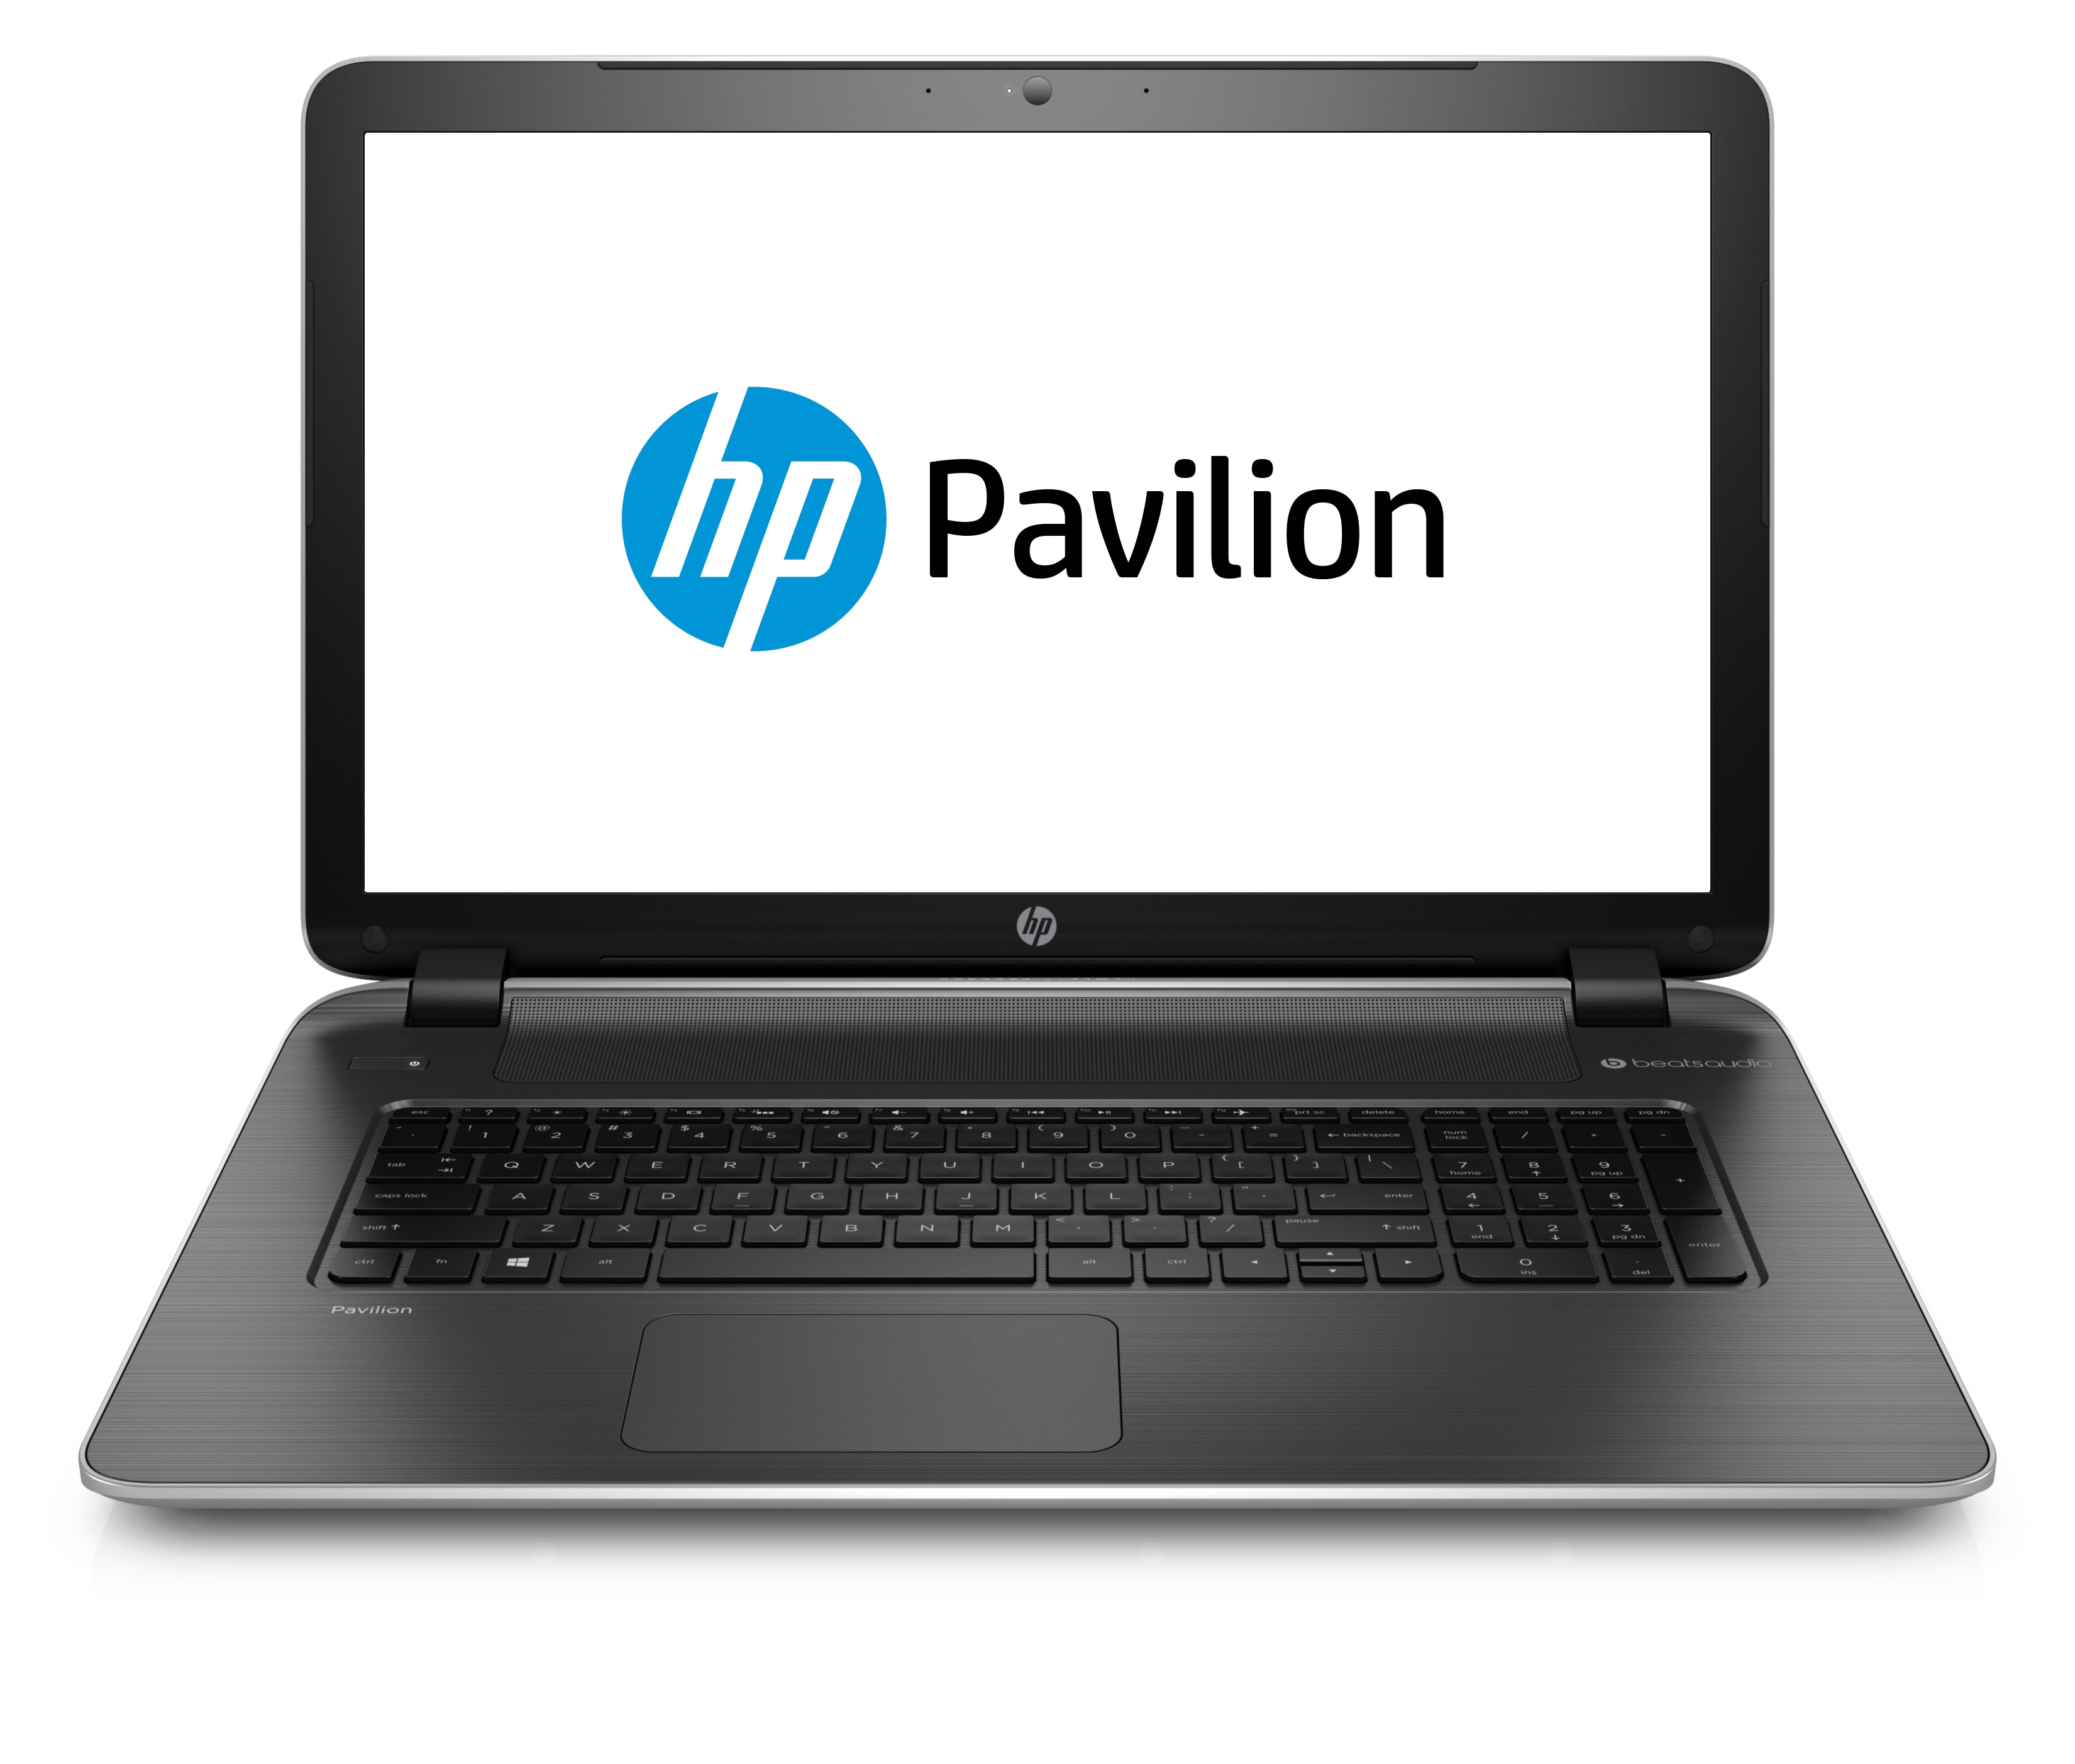 Laptop HP Pavilion 15, AMD A8-6410 2.00GHz, 8GB DDR3, 1TB SATA, Webcam, DVD-RW, 15.6 Inch